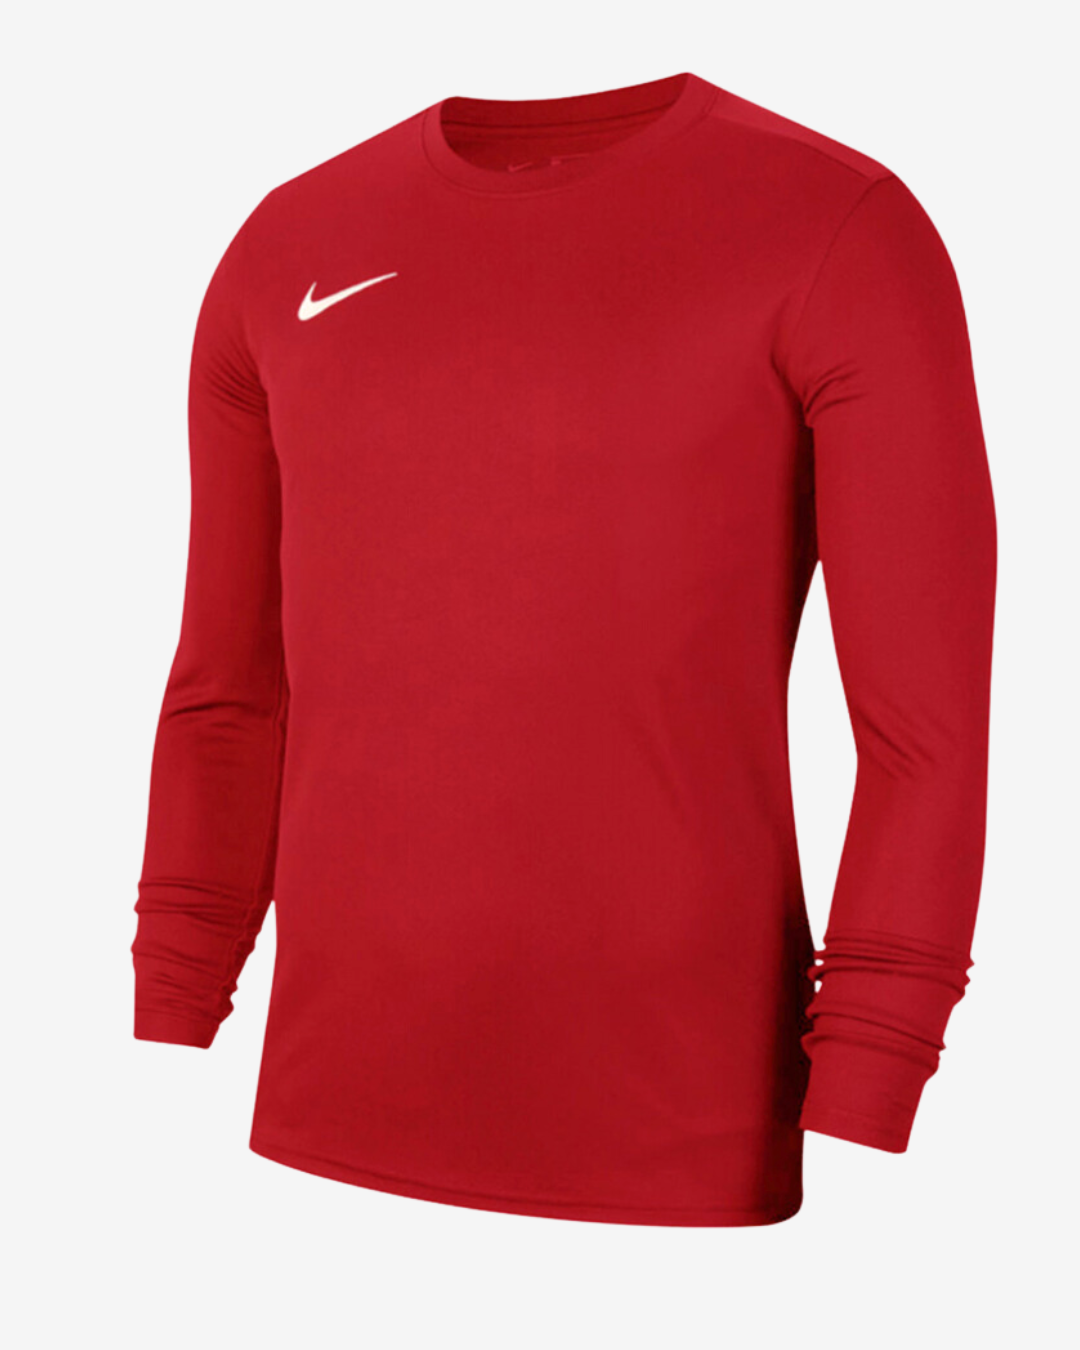 Billede af Nike Dri-fit park 7 langærmet t-shirt - Rød - Str. S - Modish.dk